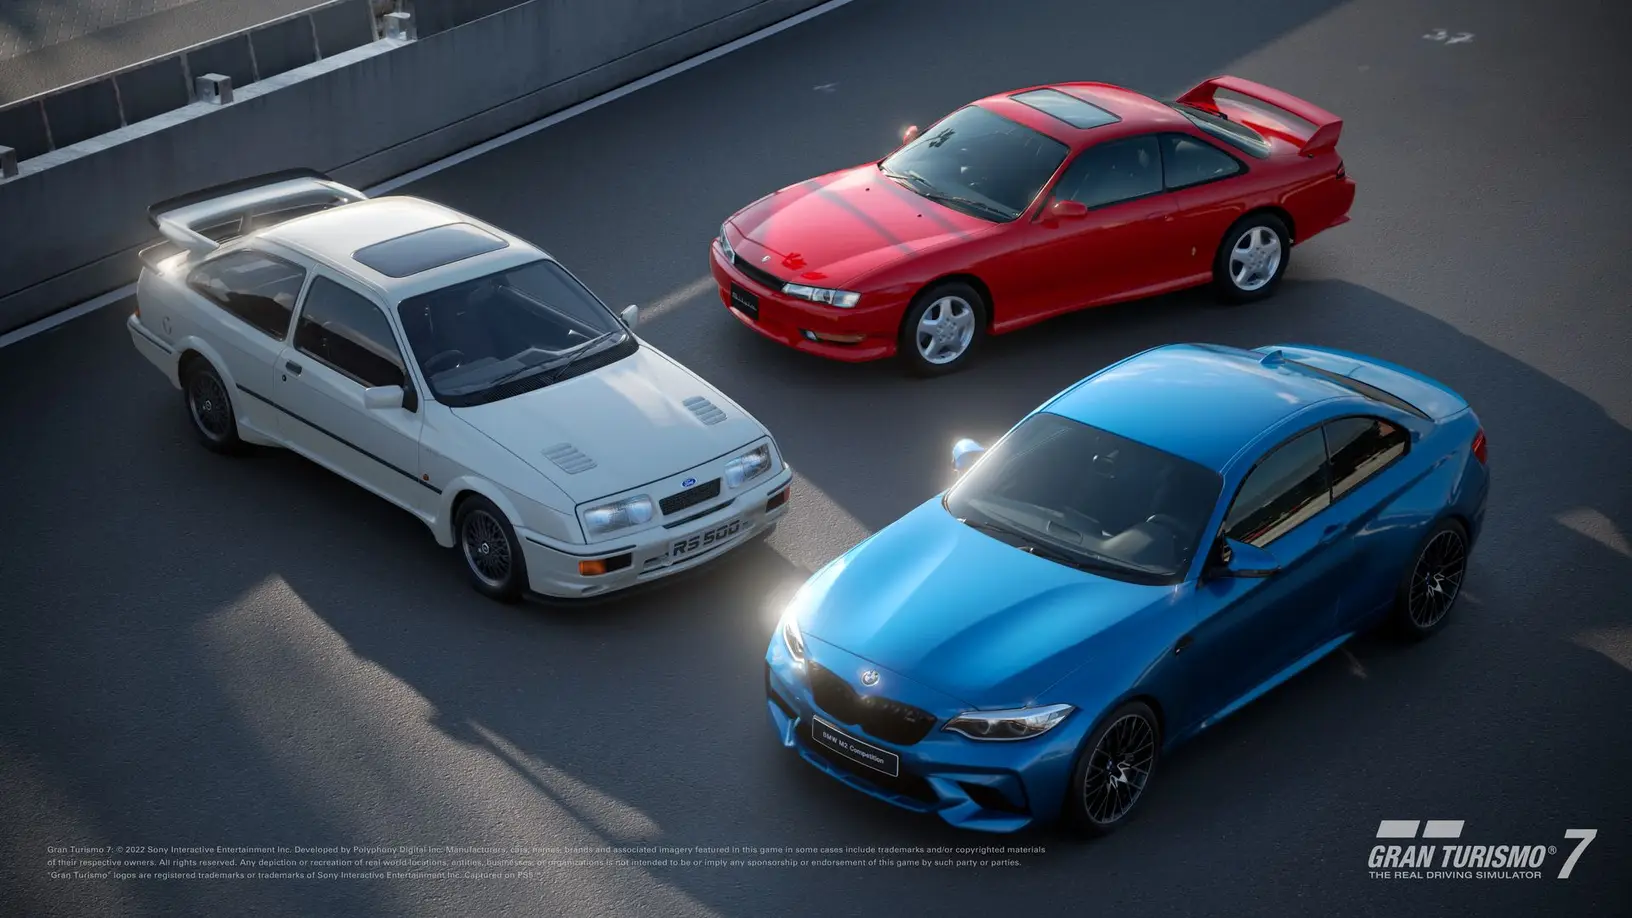 Imagem para Gran Turismo 7 v1.26 permite vender carros